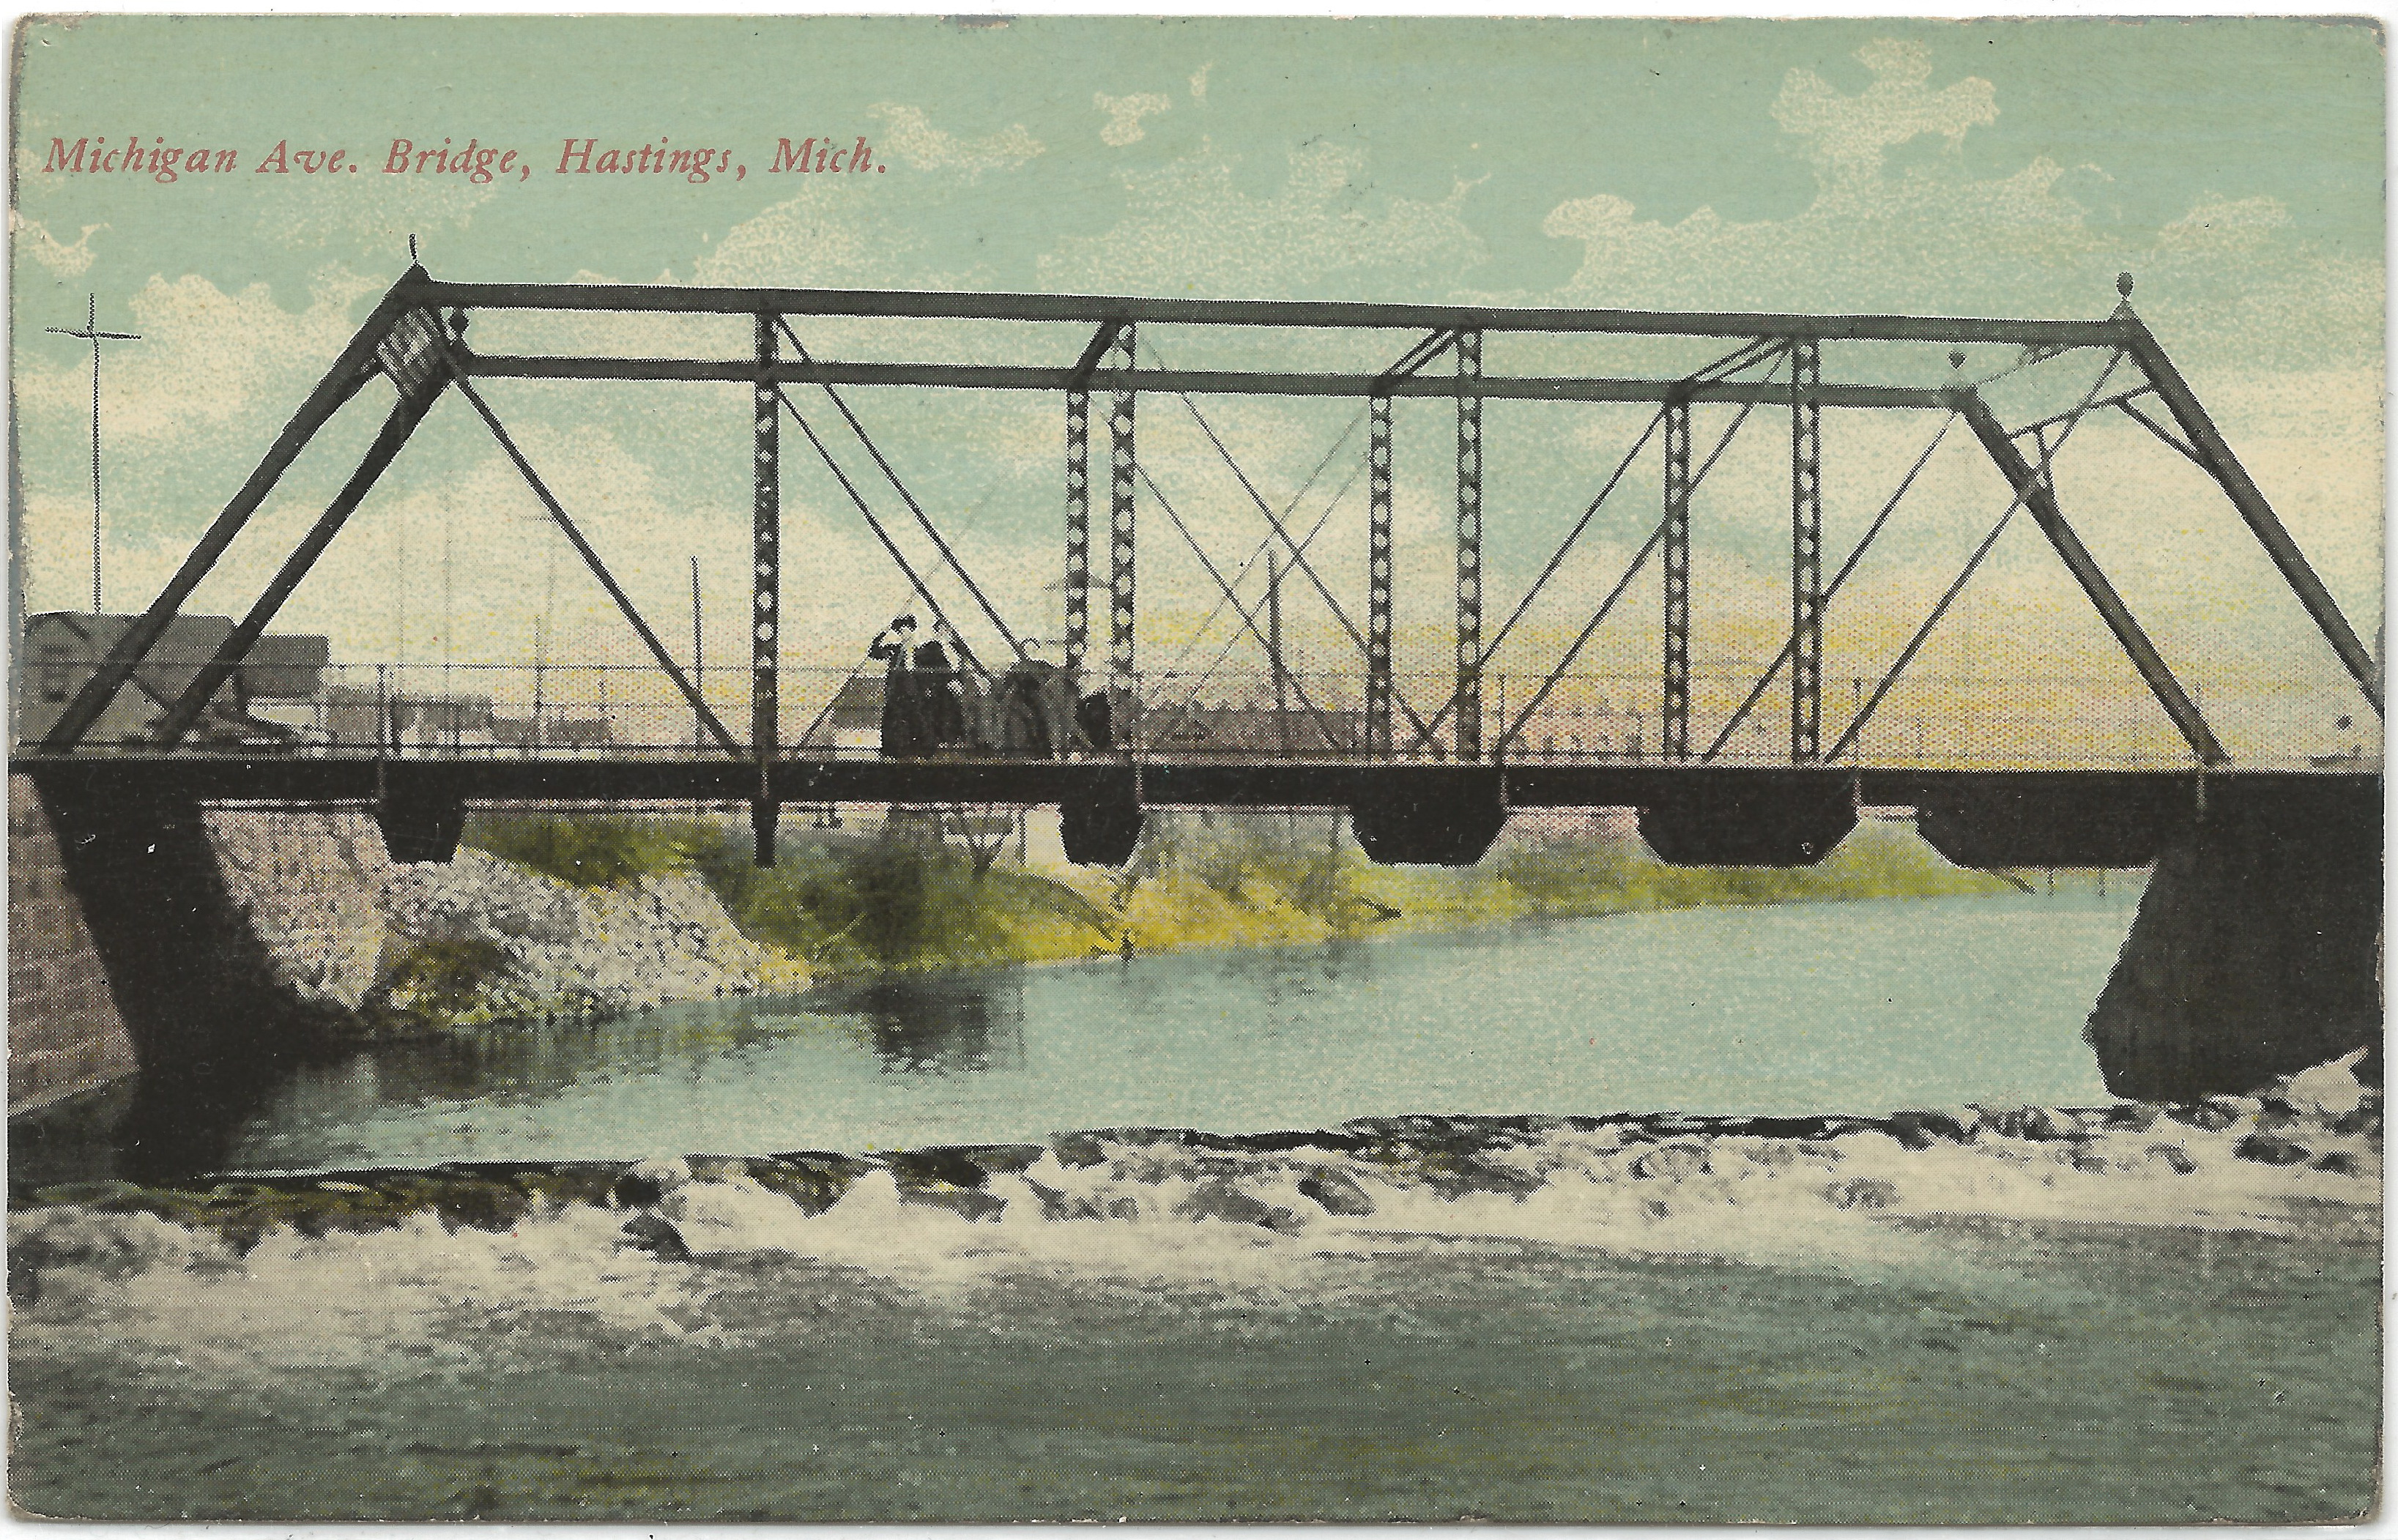 Michigan Avenue Bridge - HistoricBridges.org